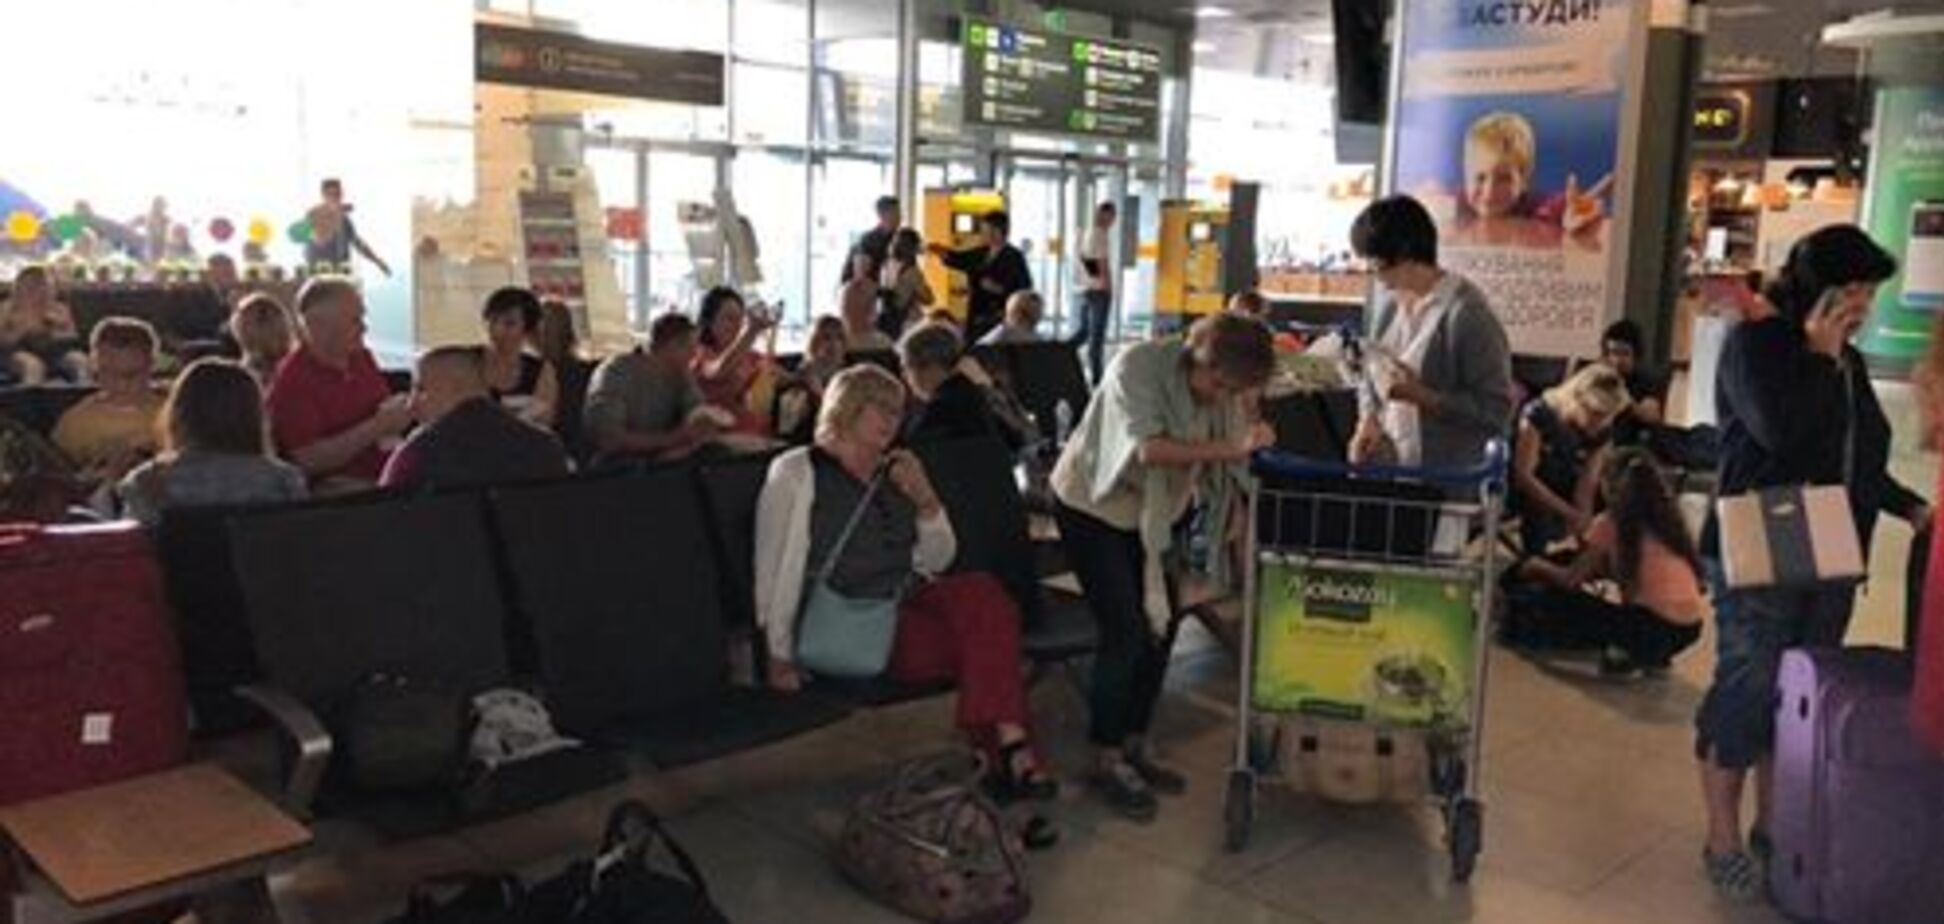 Среди пассажиров много детей: туристы снова застряли в аэропорту Киева